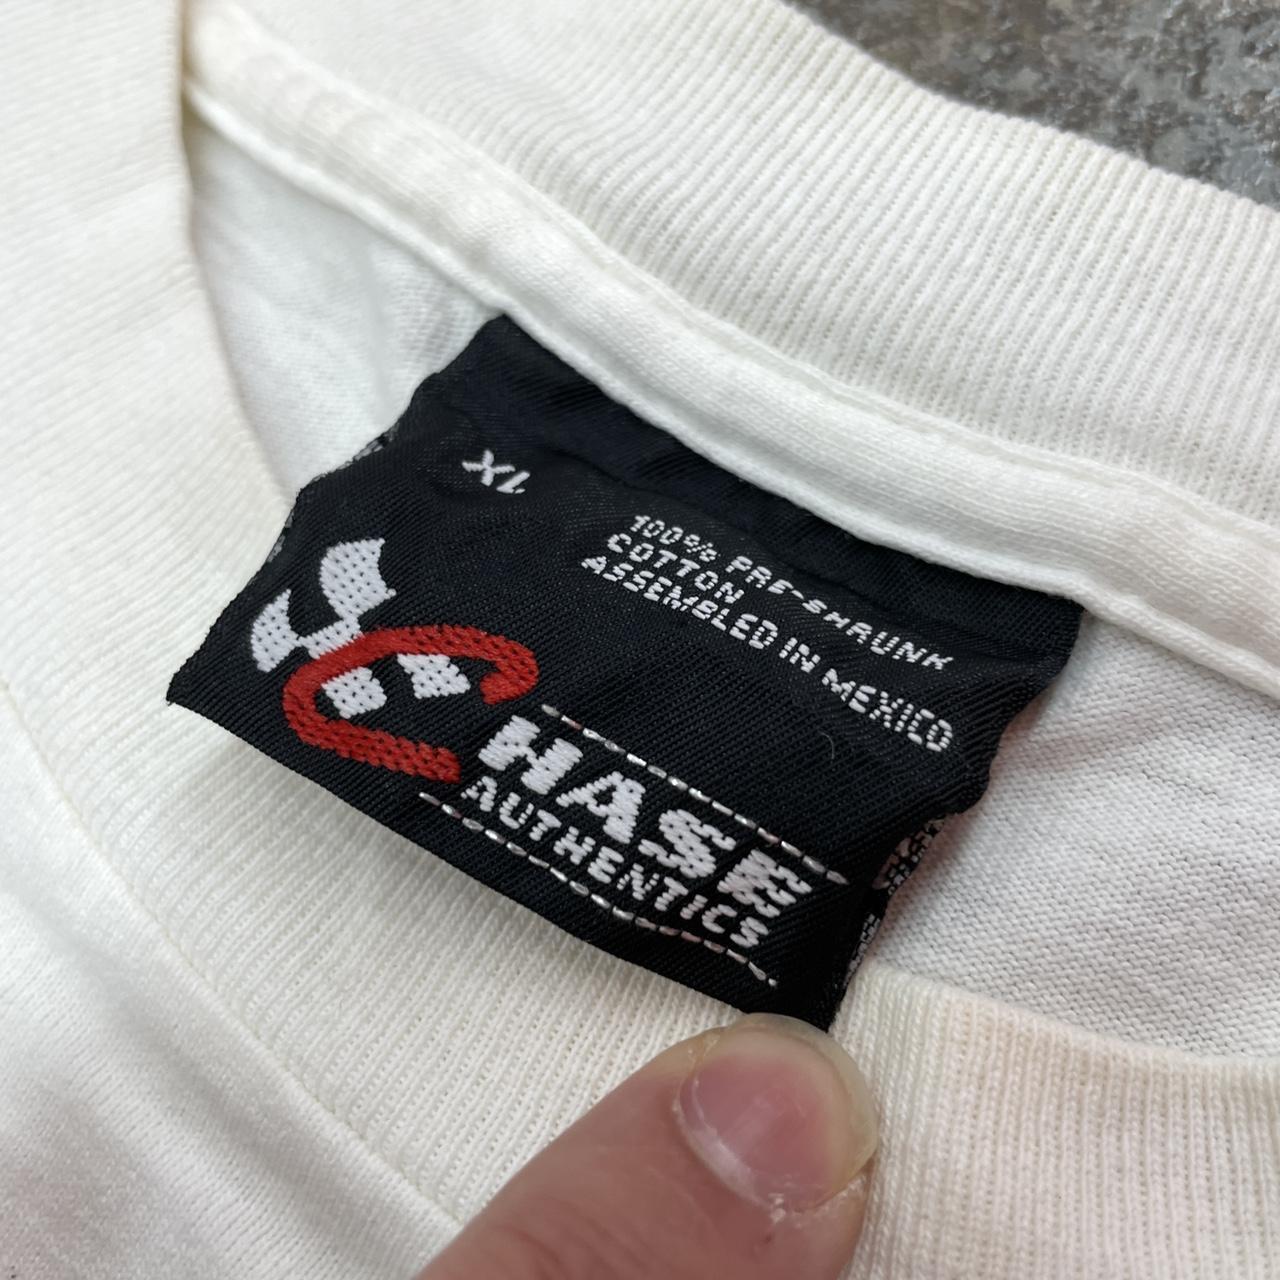 Chase Authentics Men's White T-shirt (4)